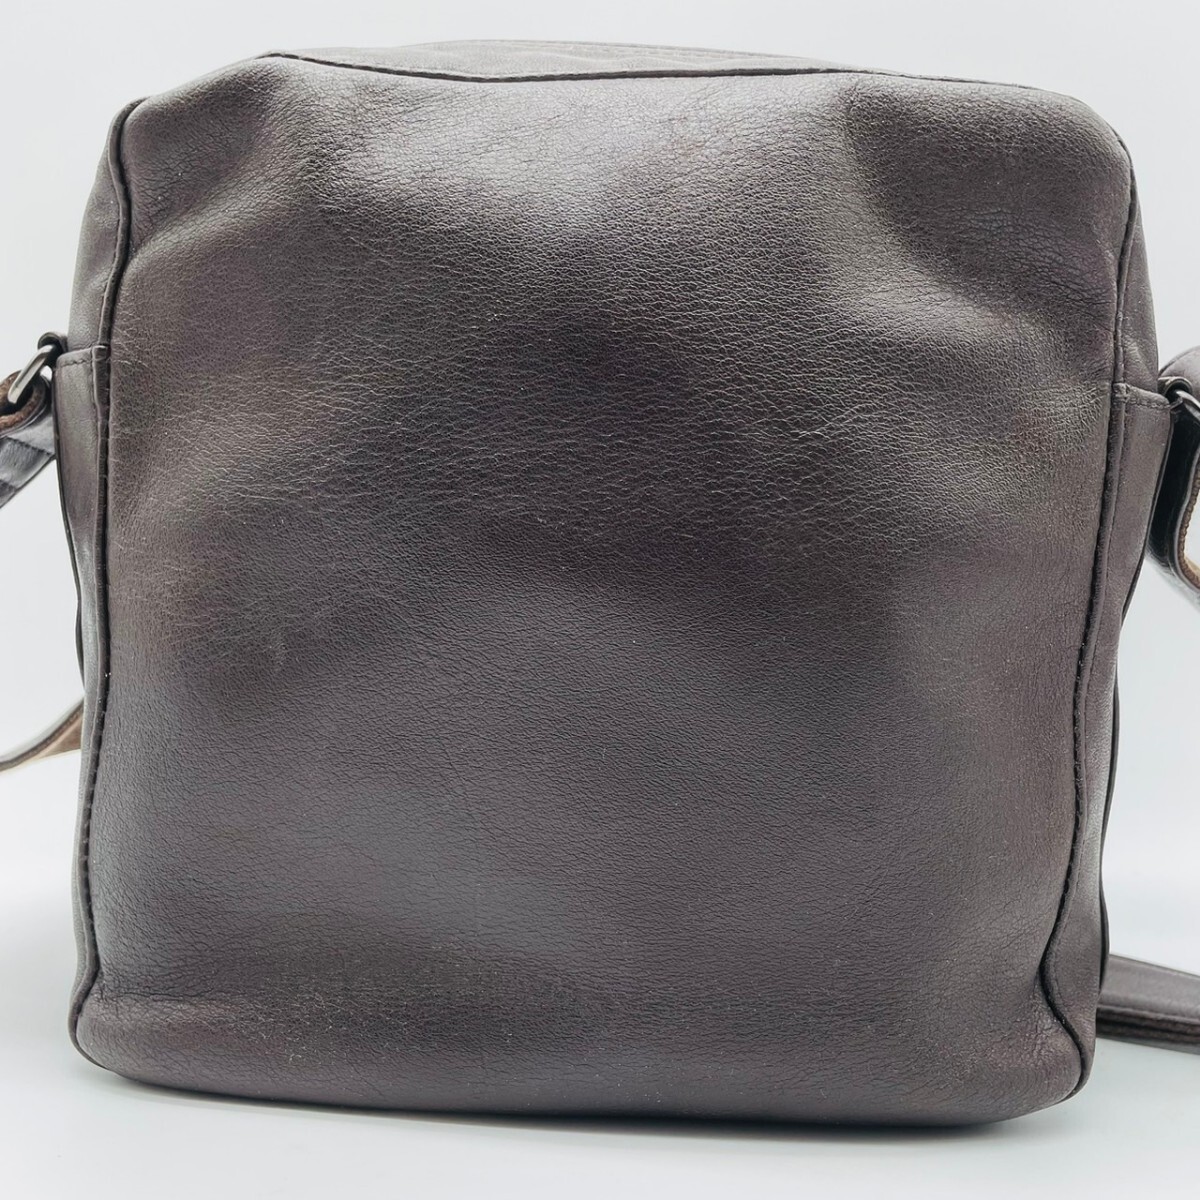 1 иен * превосходный товар *PORTER Porter Yoshida bag Ame iz сумка на плечо сумка "body" наклонный .. кожа Brown чай цвет мужской 